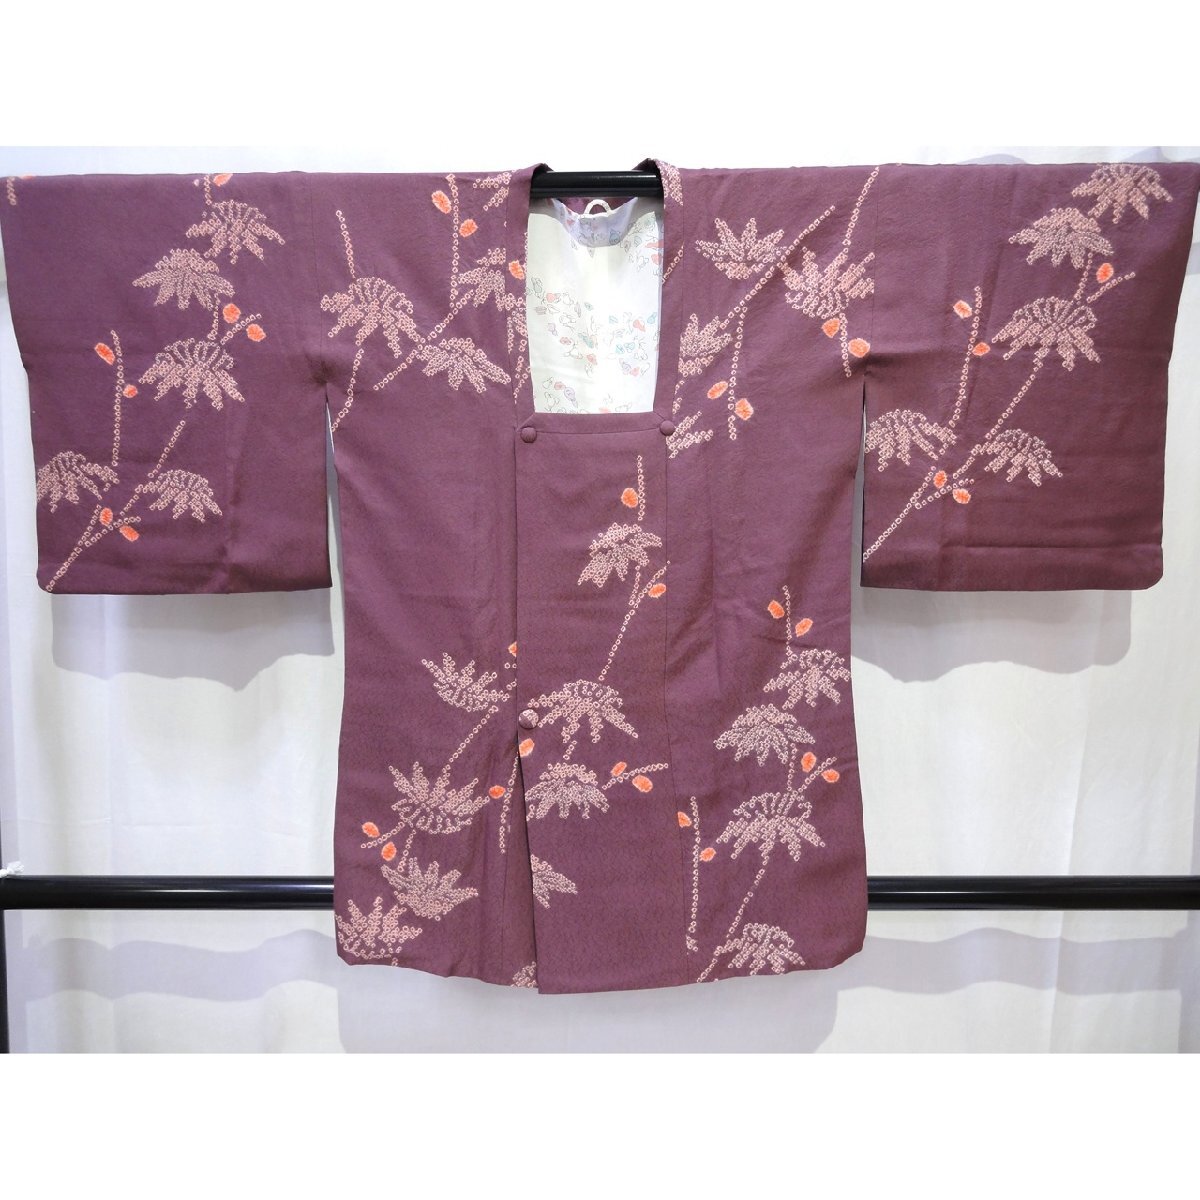 正絹・道行・着物・絞り・和装コート・No.200701-0331・梱包サイズ60